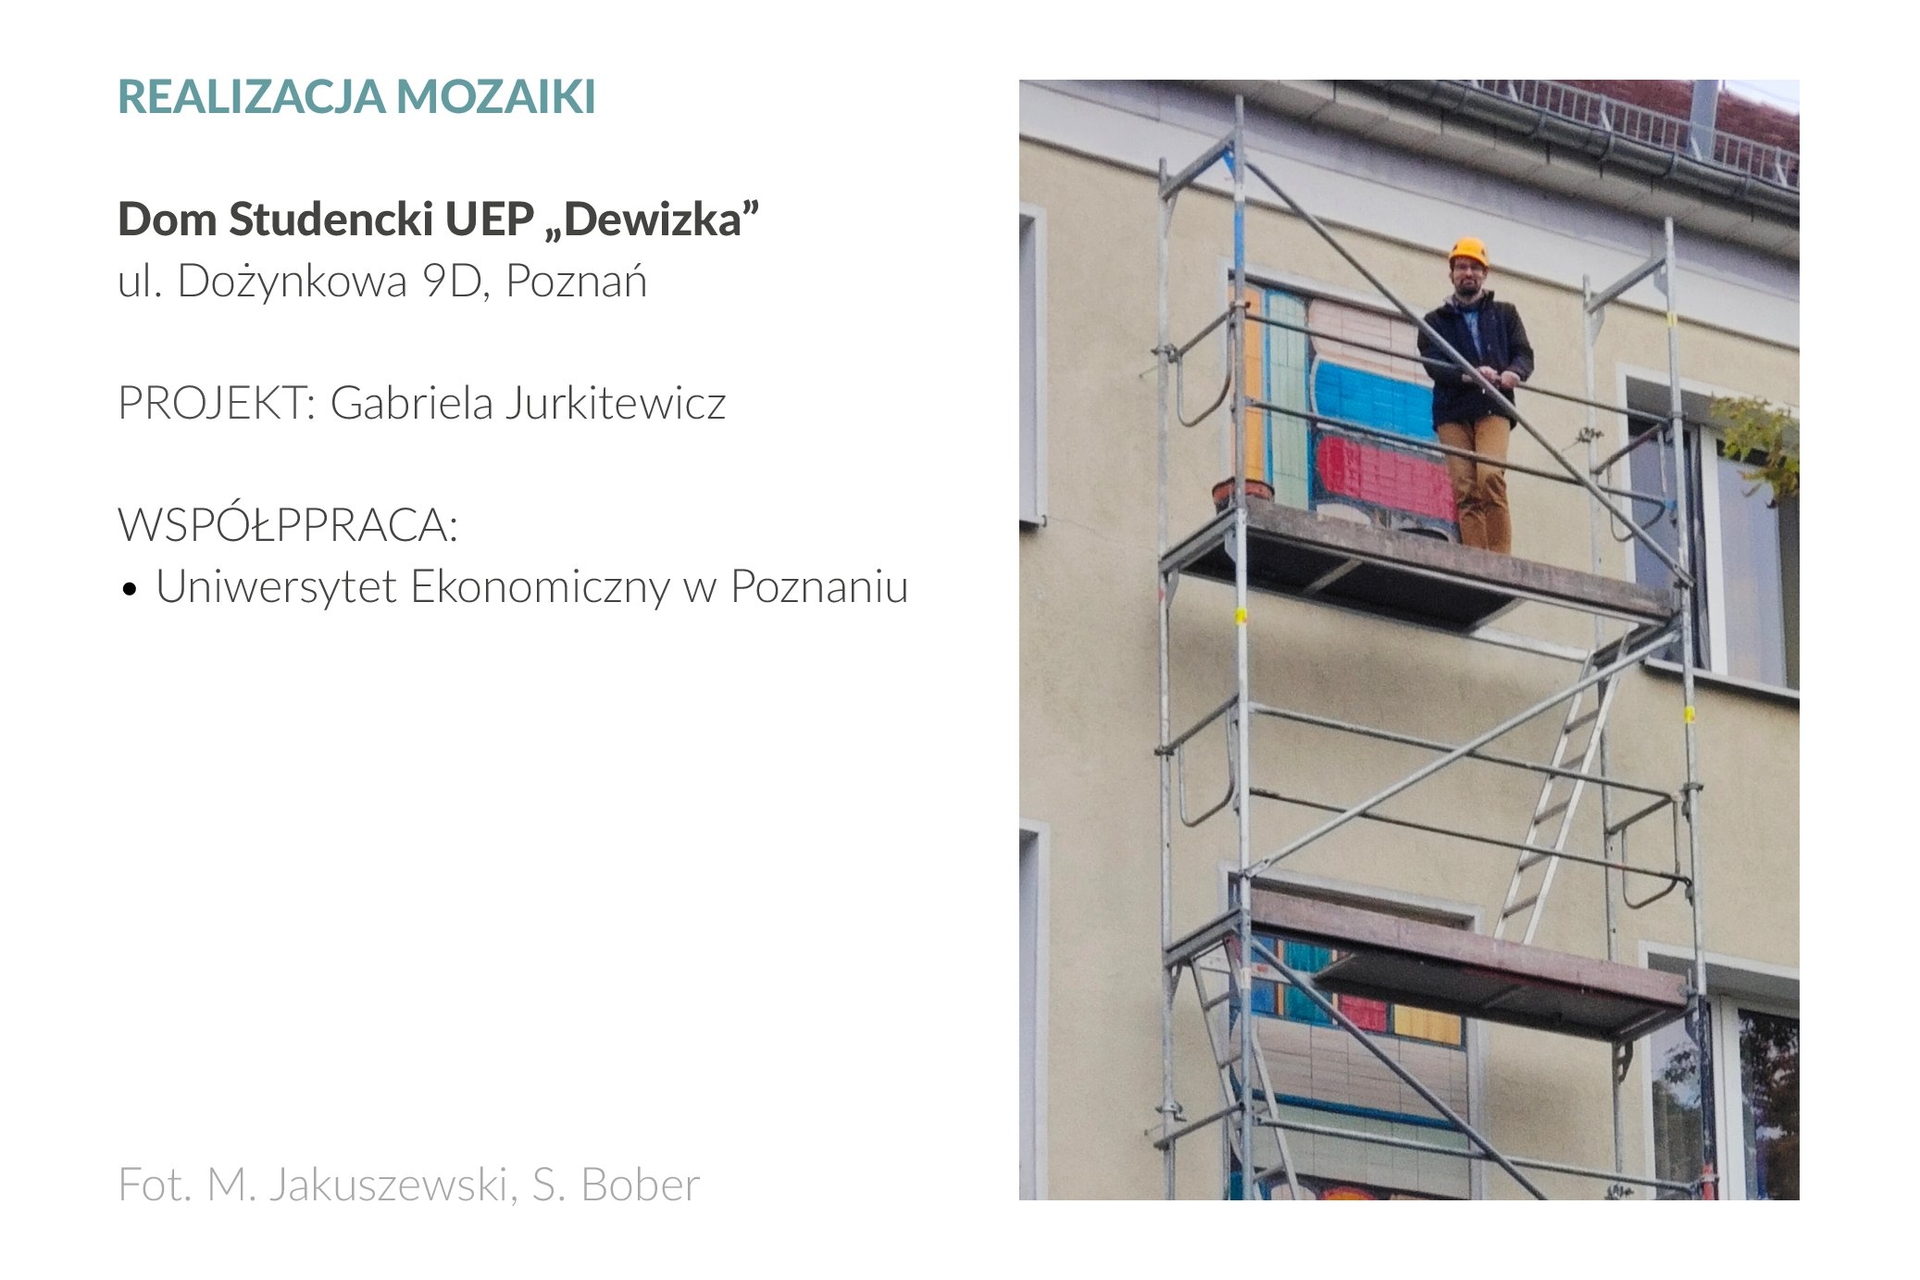 Zdjęcie przedstawia mężczyznę na 3 piętrze rusztowania, które stoi na przy elewacji frontowej Domu Studenckiego UEP „Dewizka” przy ul. Dożynkowej 9D w Poznaniu. Ubrany w żółty kask mężczyzna spogląda i uśmiecha się w stronę obiektywu. Na ścianie za rusztowaniem widać widać fragment mozaiki ceramicznej, wykonanej według projektu Gabrieli Jurkitewicz.